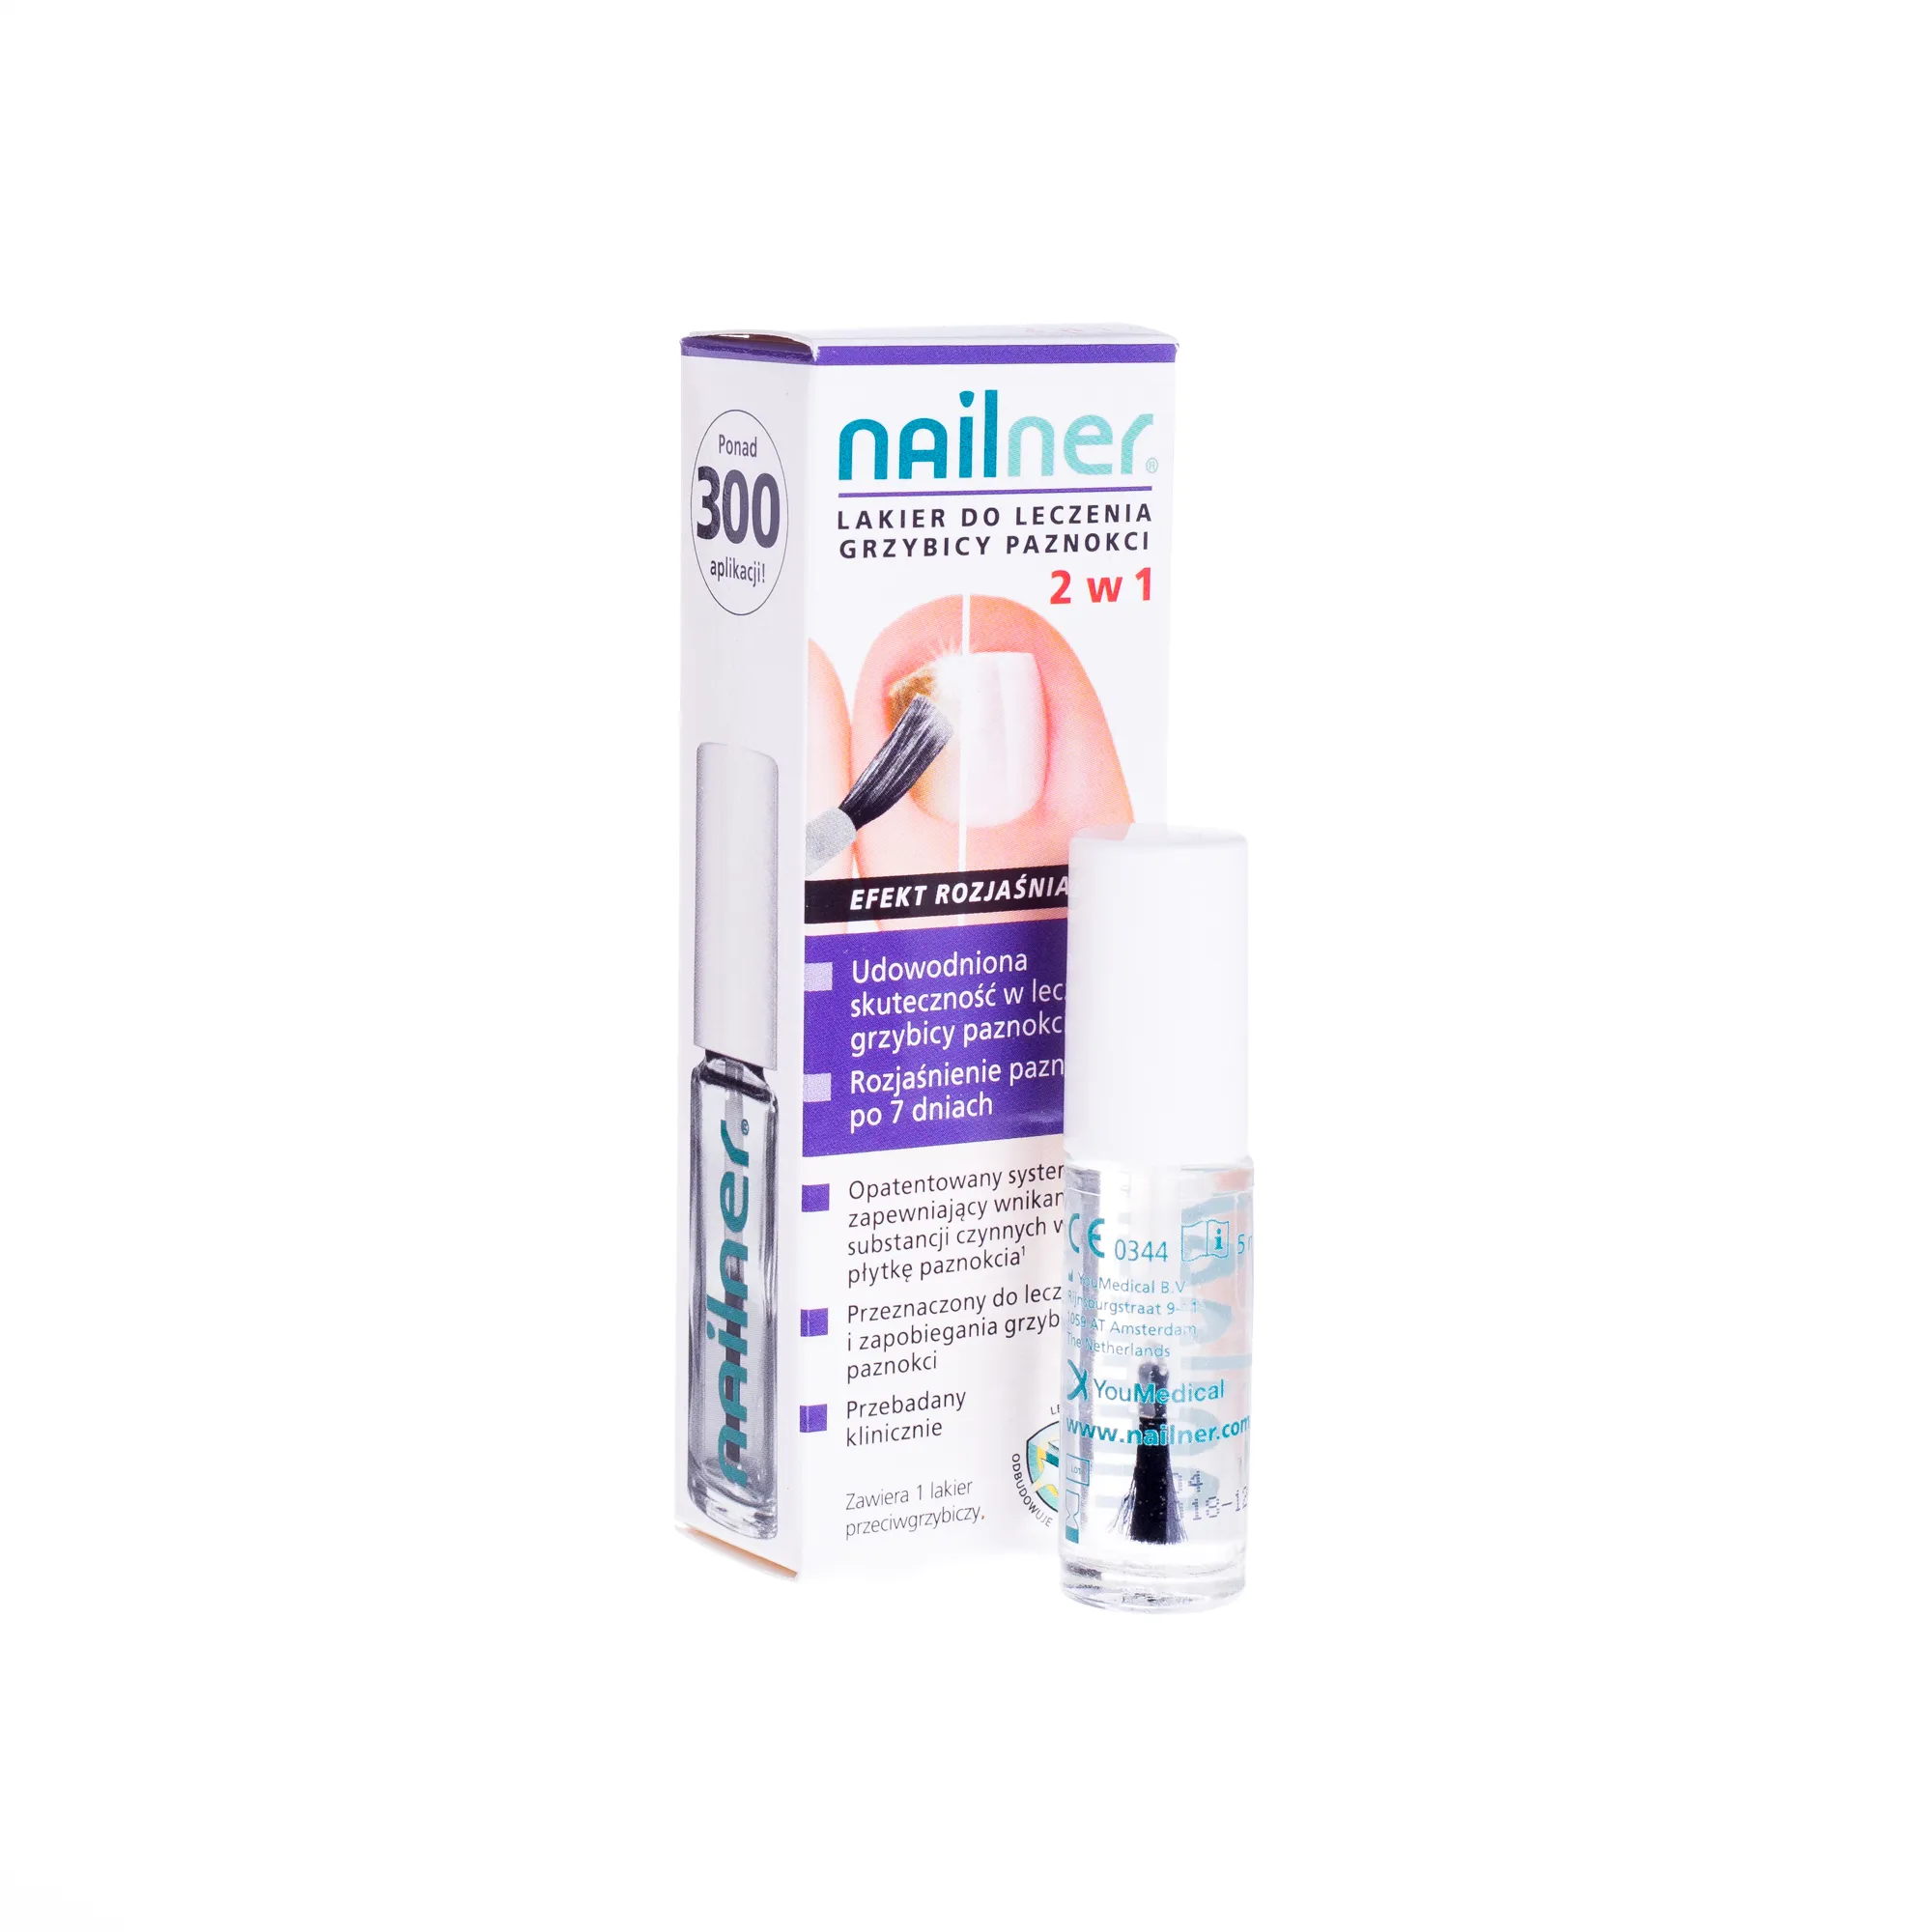 Nailner lakier do leczenia grzybicy paznokci 2w1, 5 ml 